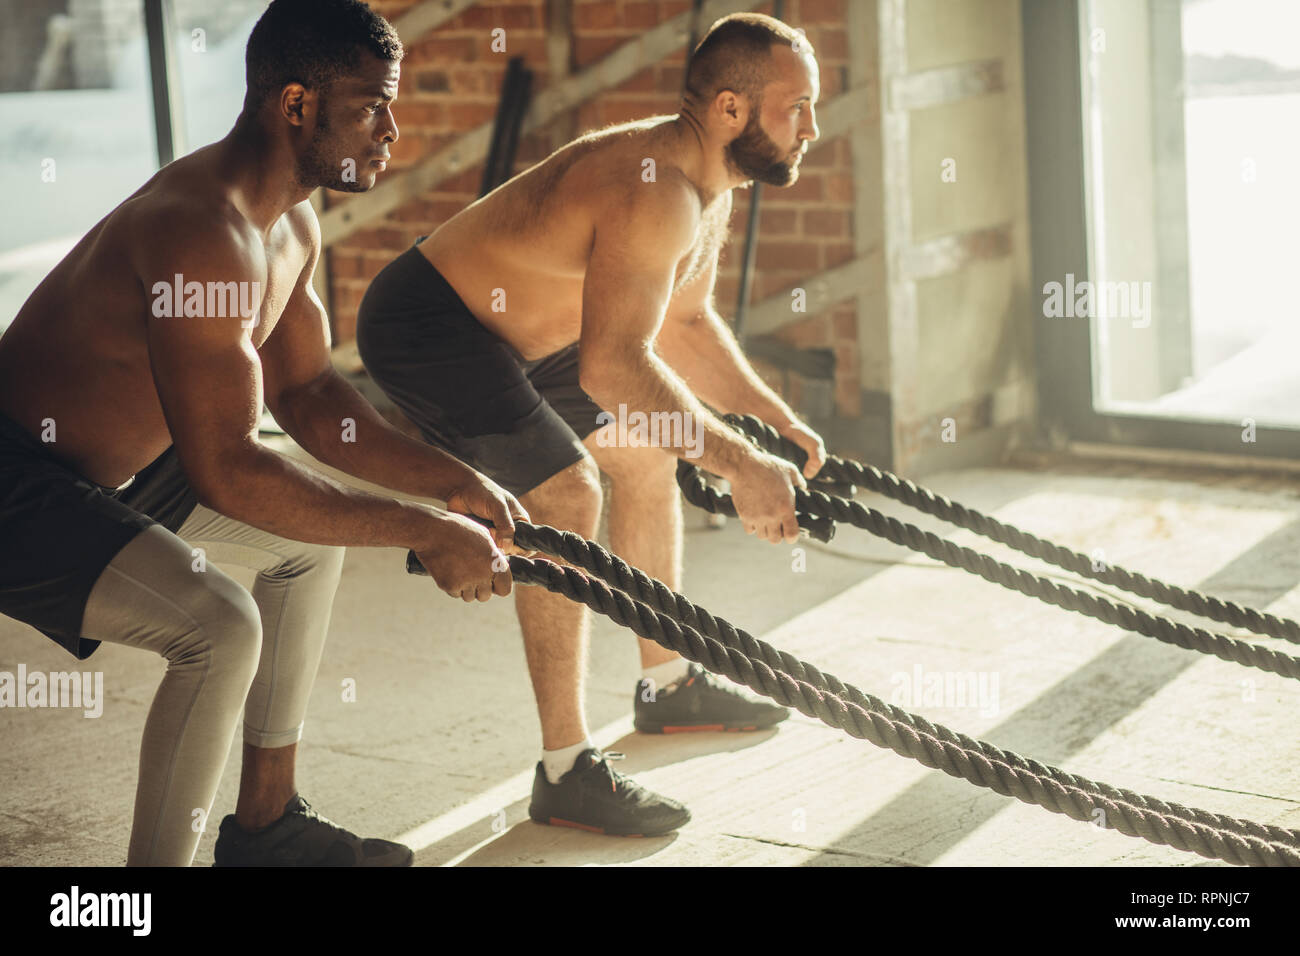 Deux hommes torse nu multiethnique bodybuilders sont l'exercice de combat avec des cordes. La haute intensité et la nature de la formation rapide avec un effet corde Banque D'Images